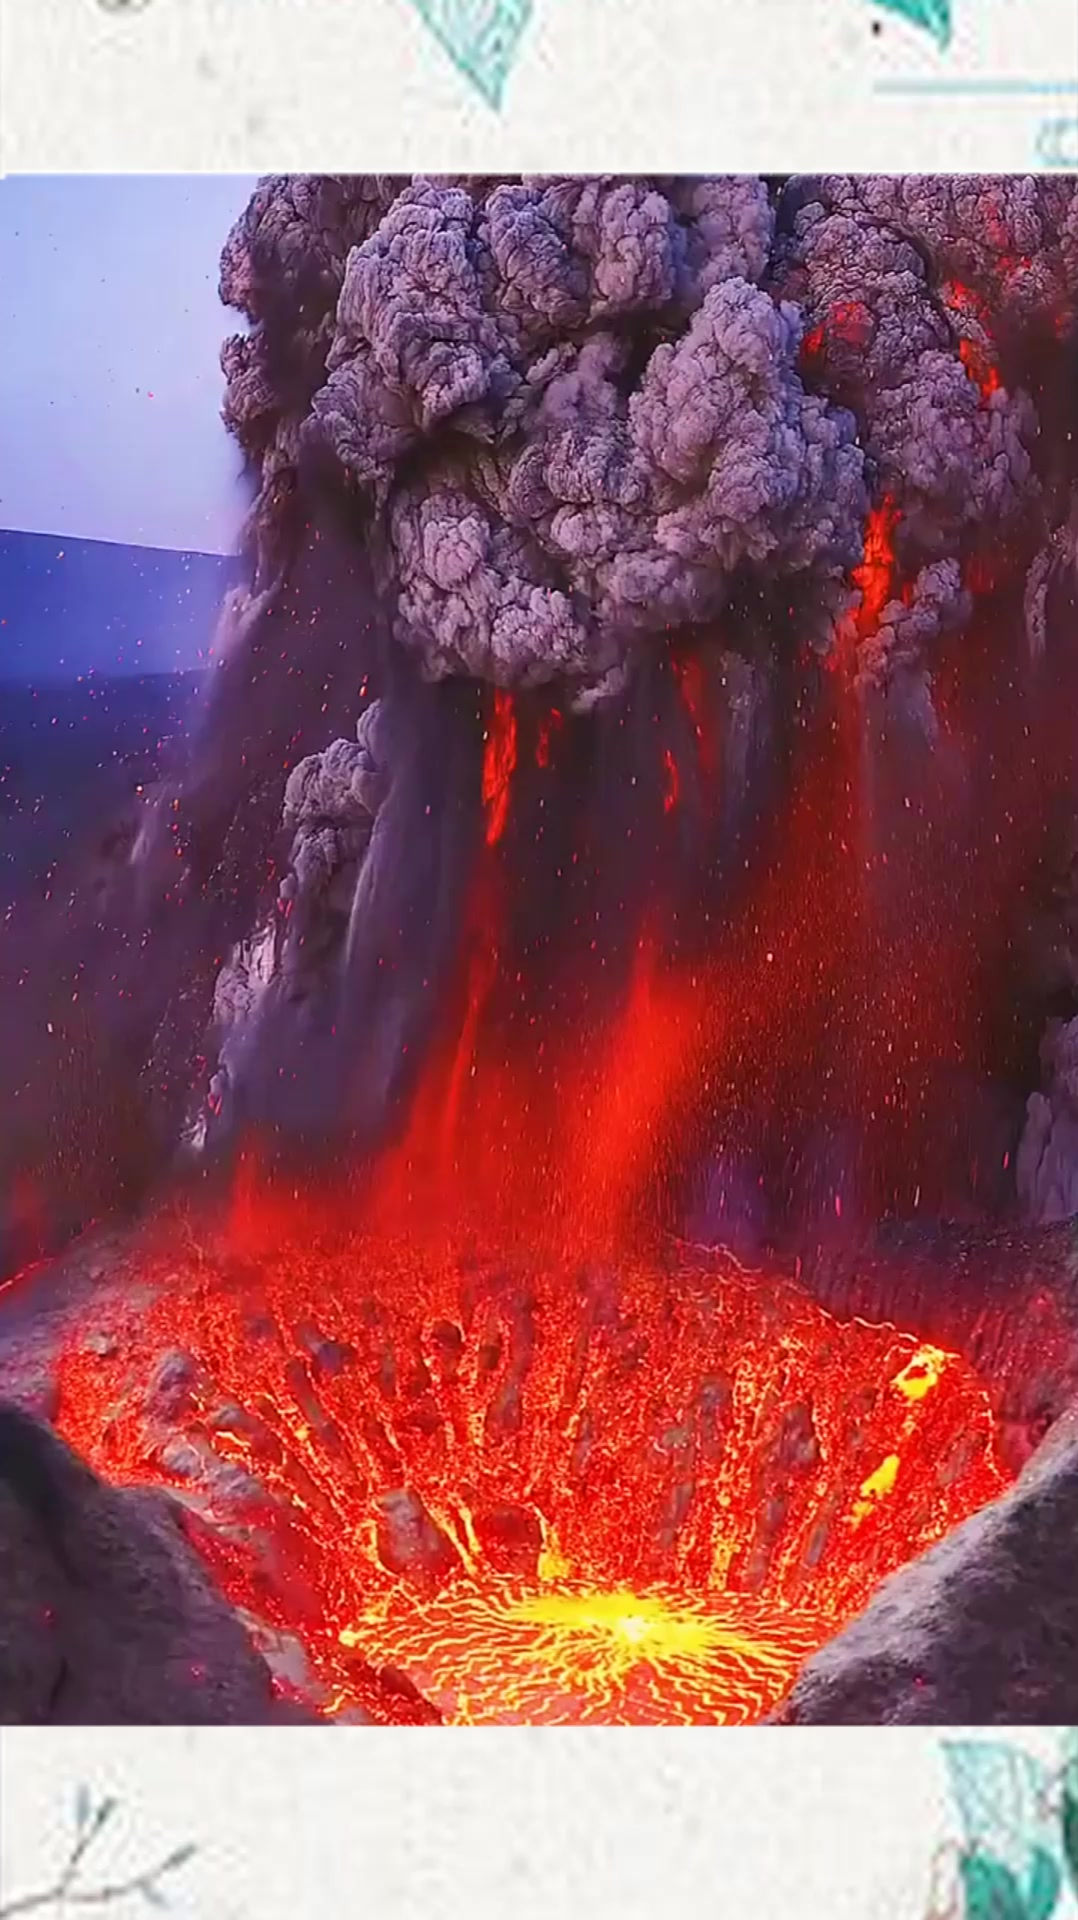 零距离拍摄到火山爆发后,岩浆流露画面,这次无人机真的坠毁了